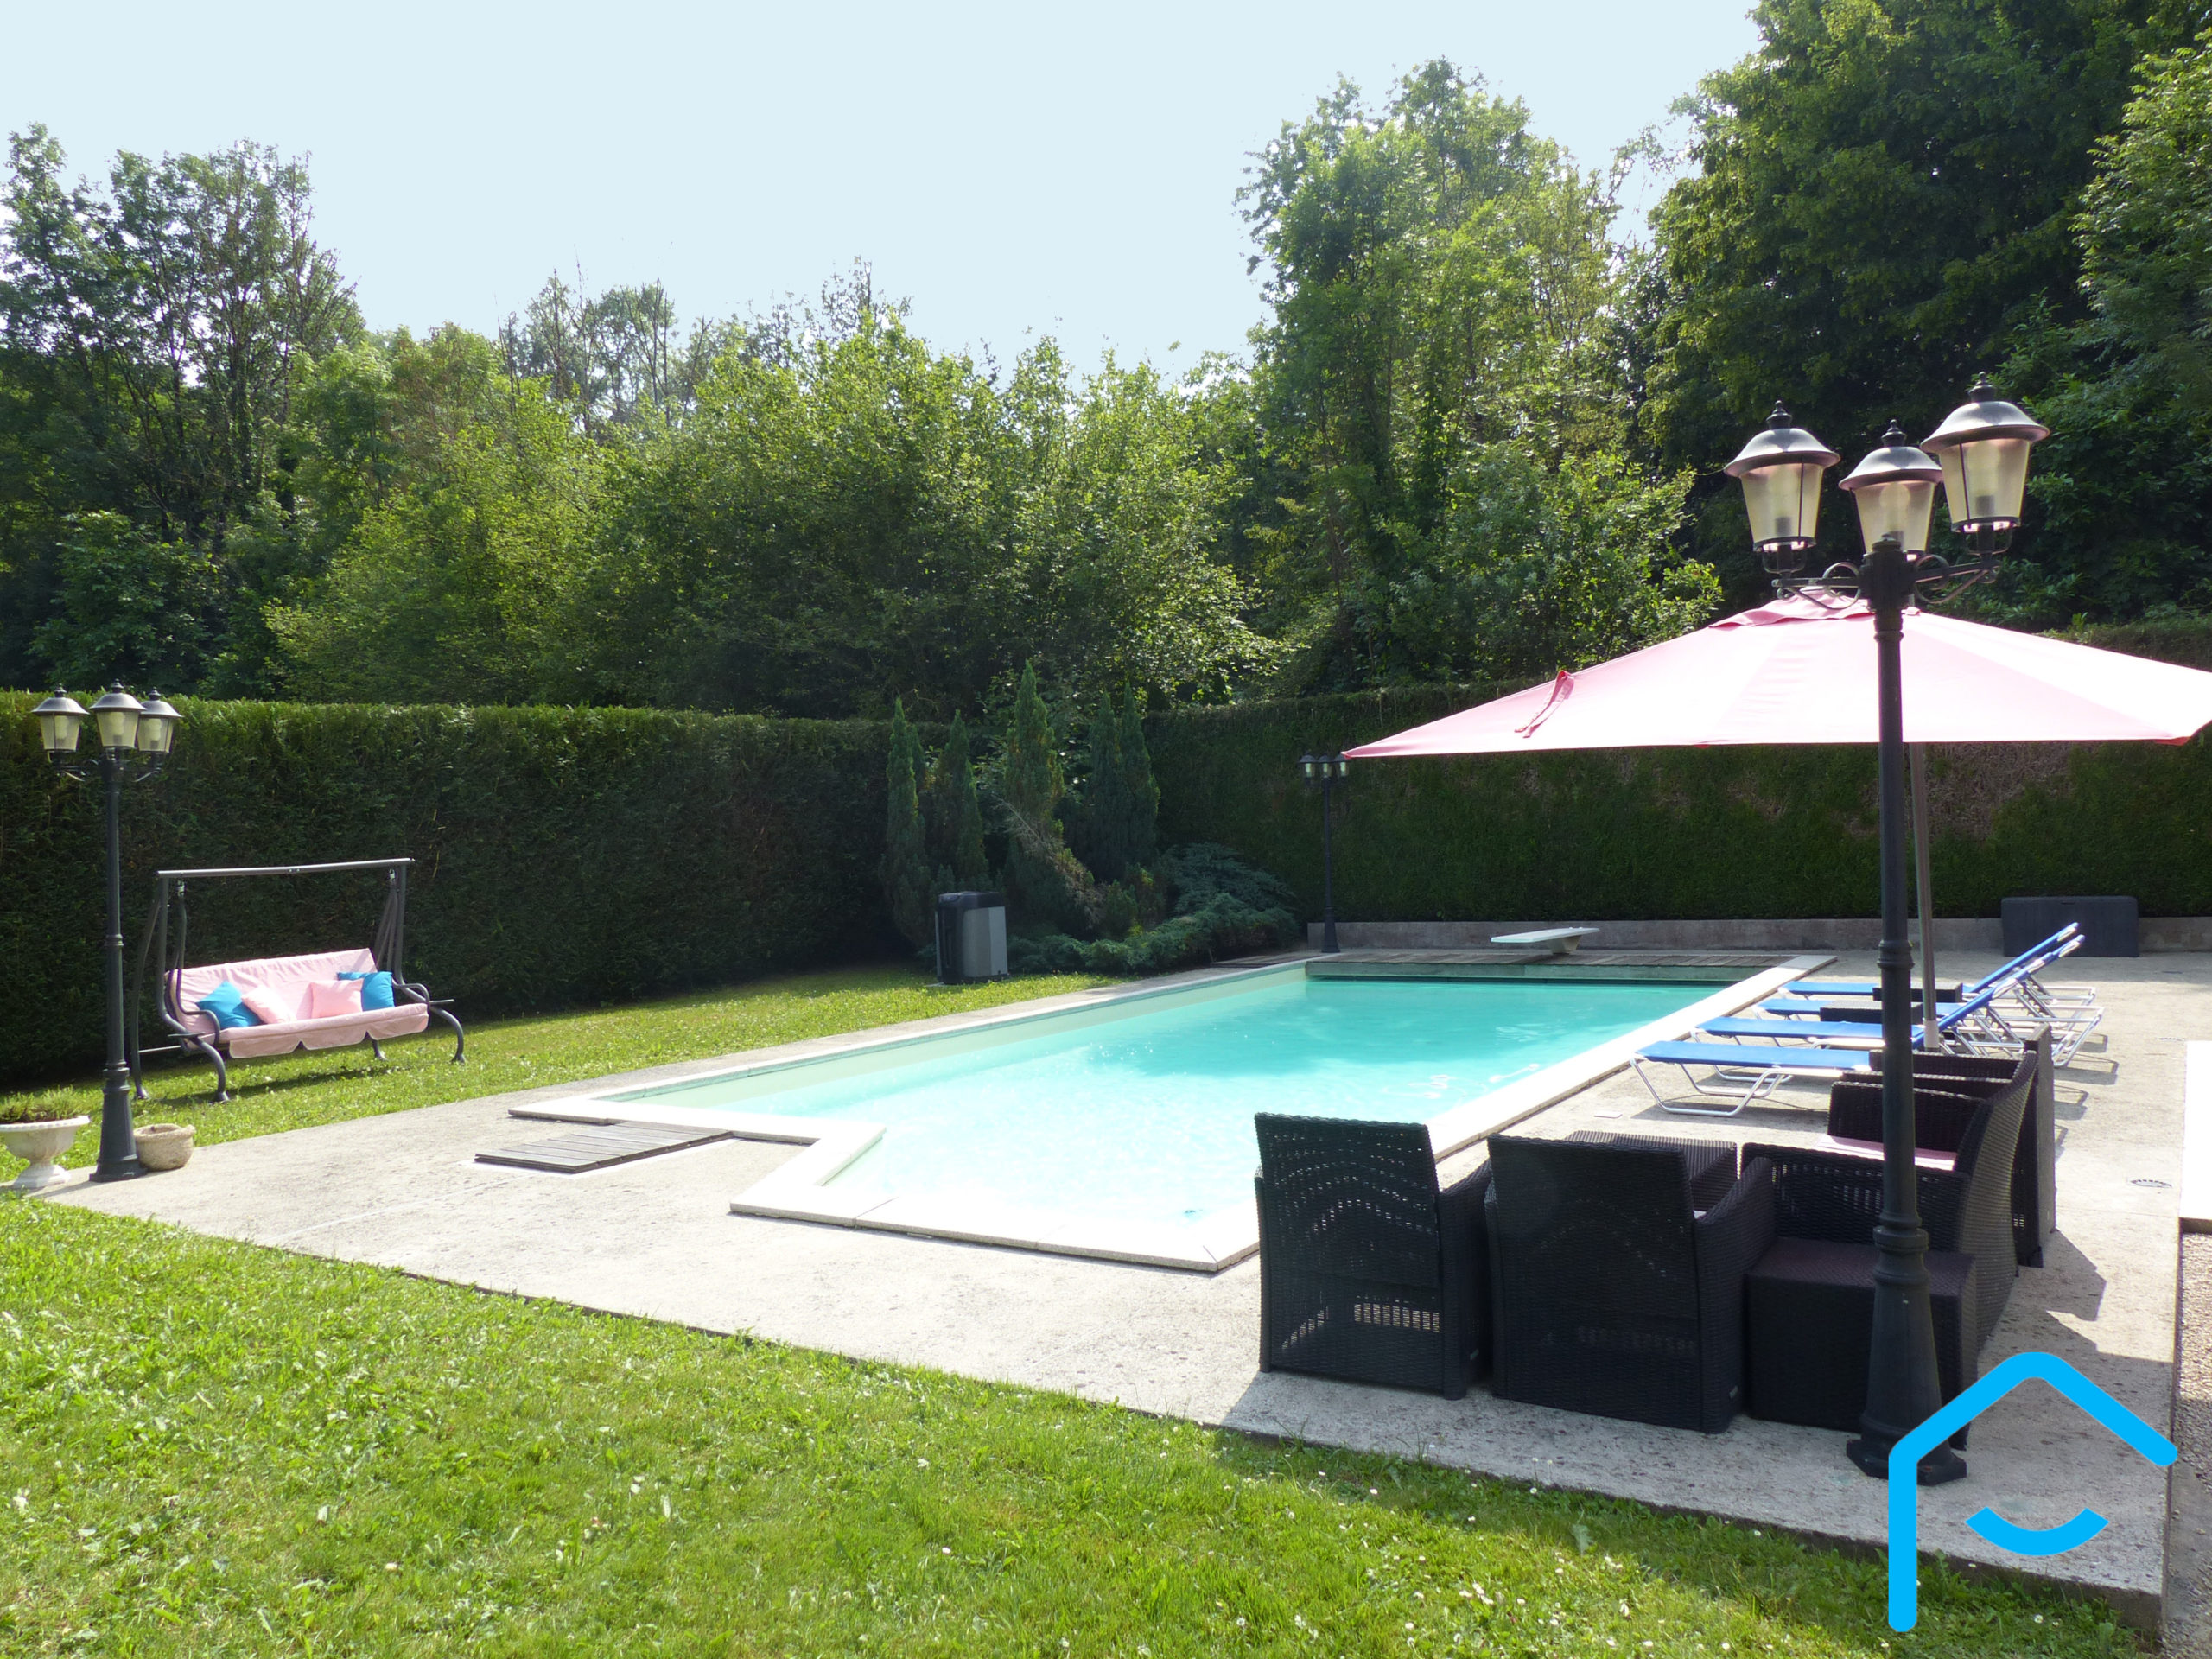 A vendre Savoie maison avec piscine terrain lac Aiguebelette vue 1